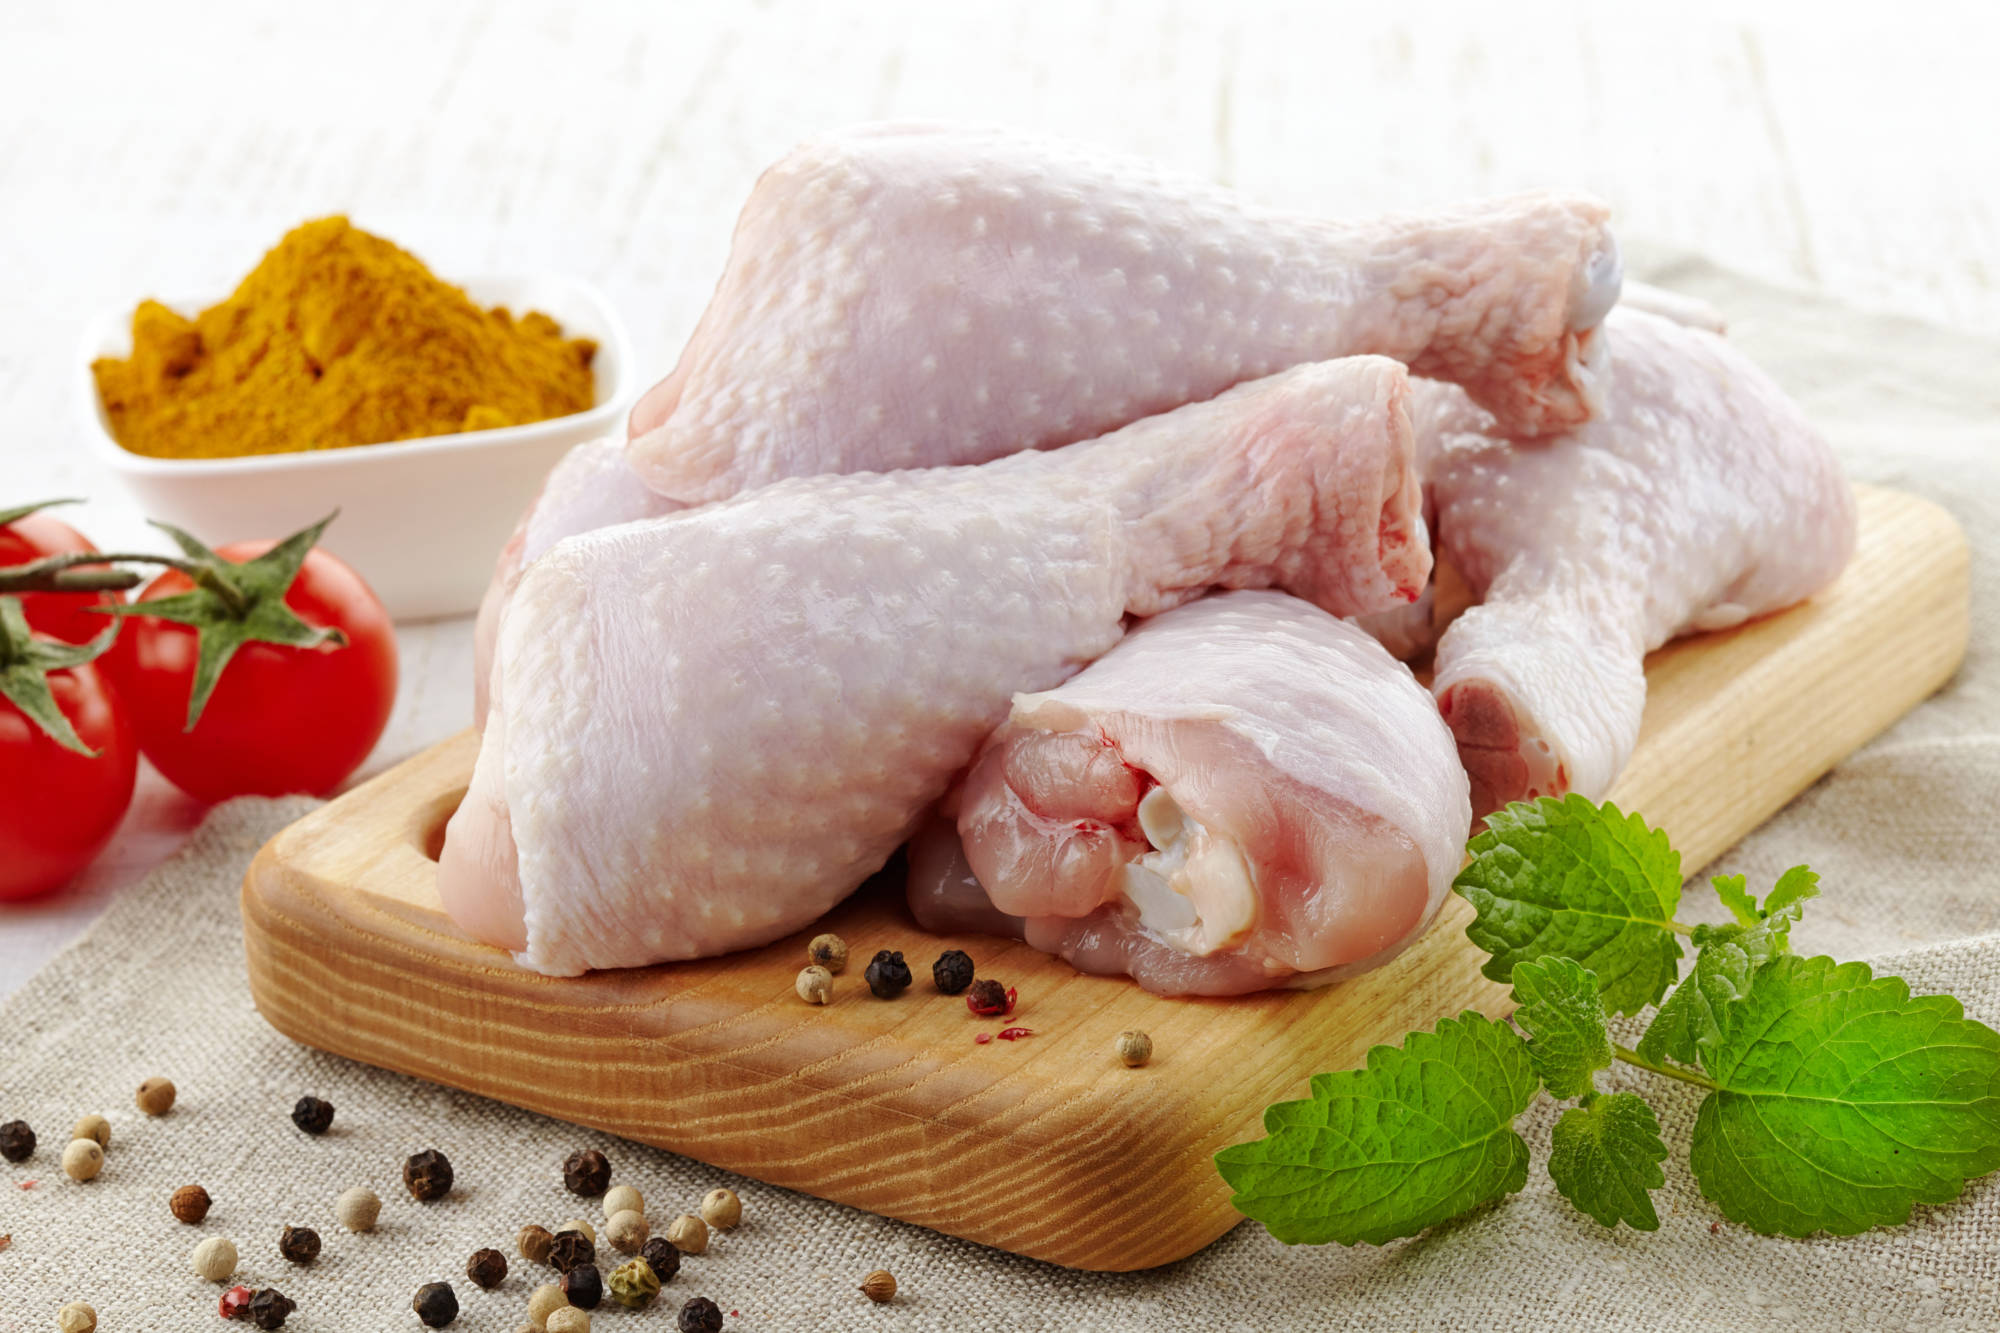 5 советов, как правильно в магазине выбрать свежую курятину